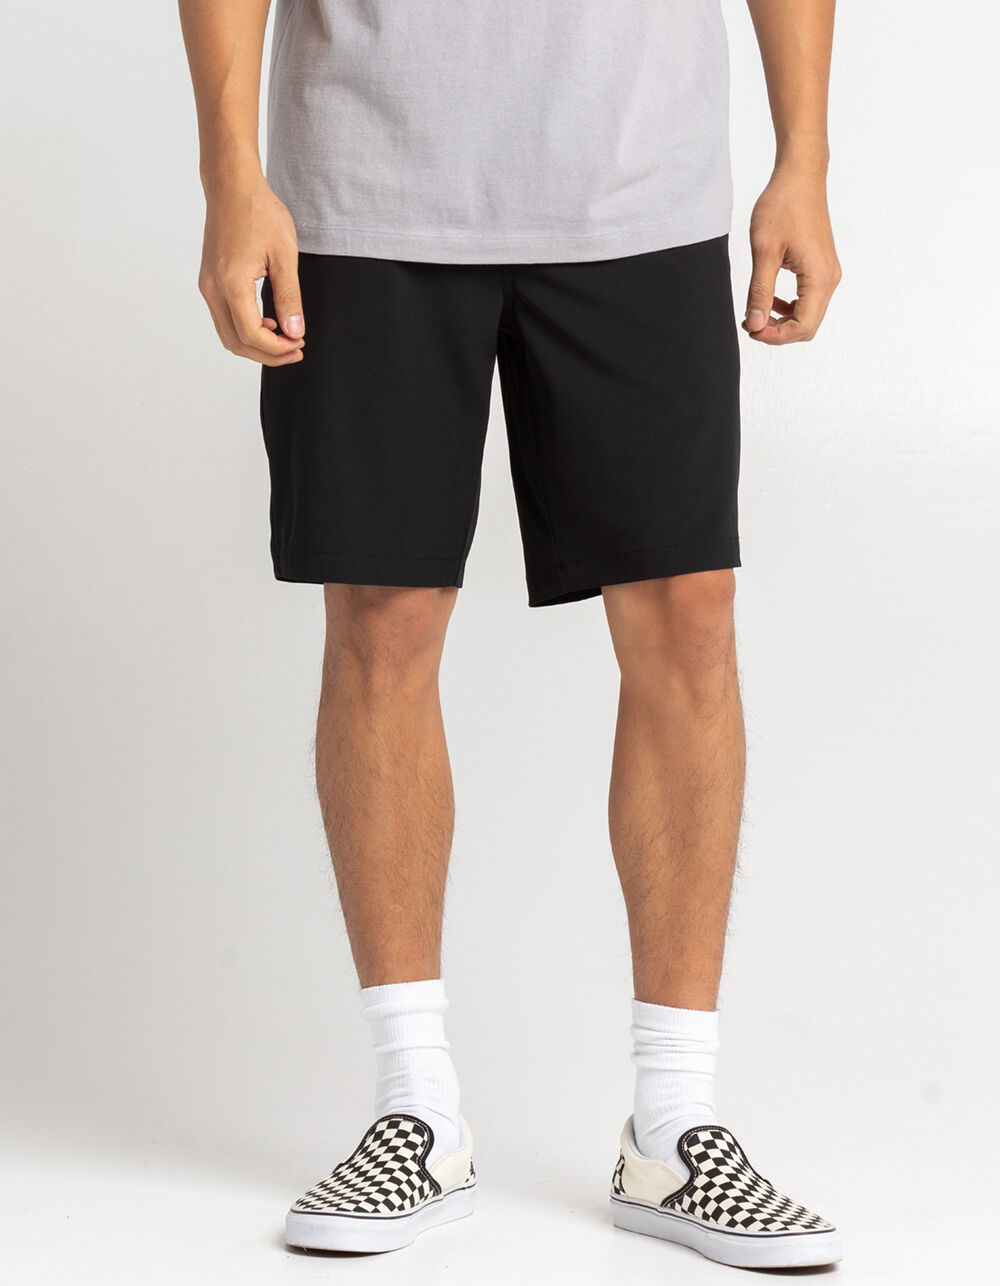 Men's Hybrid Shorts